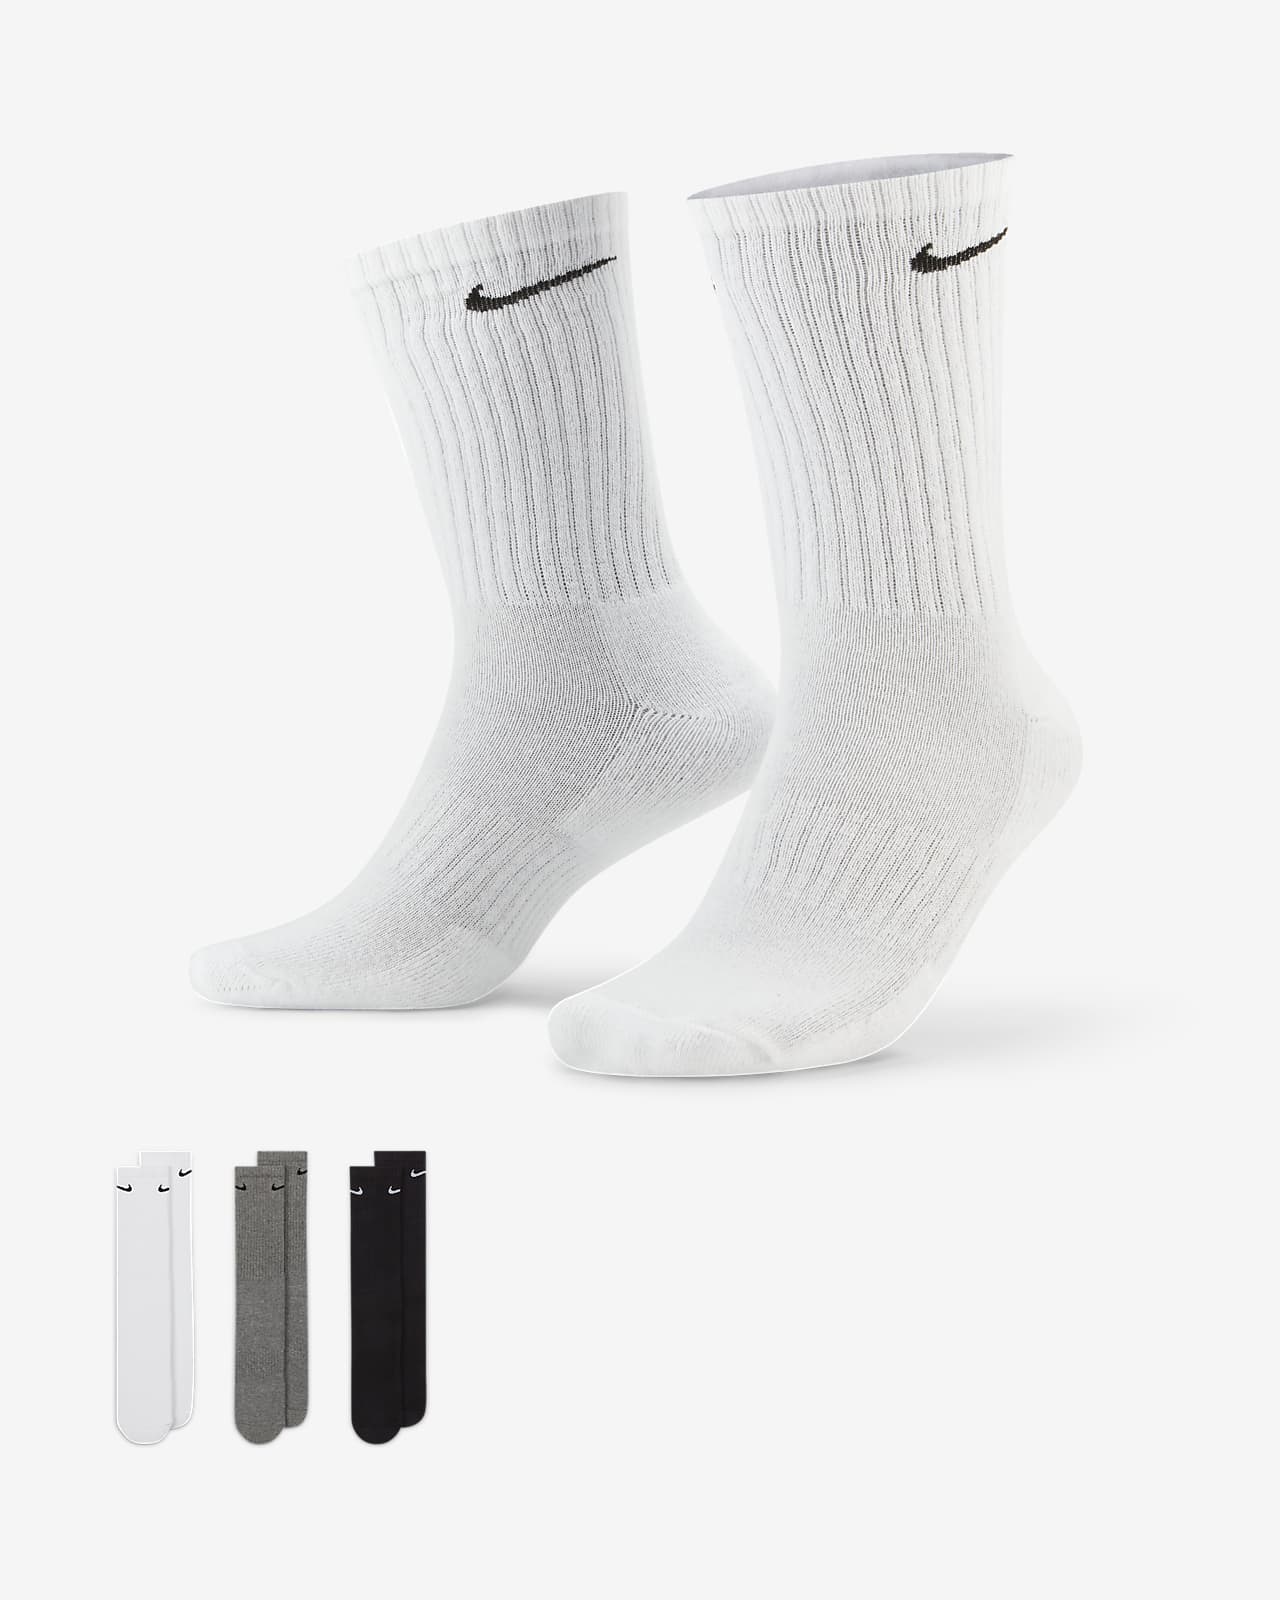 Antemano cepillo Arreglo Calcetas de entrenamiento Nike Everyday Cushioned (3 pares). Nike MX